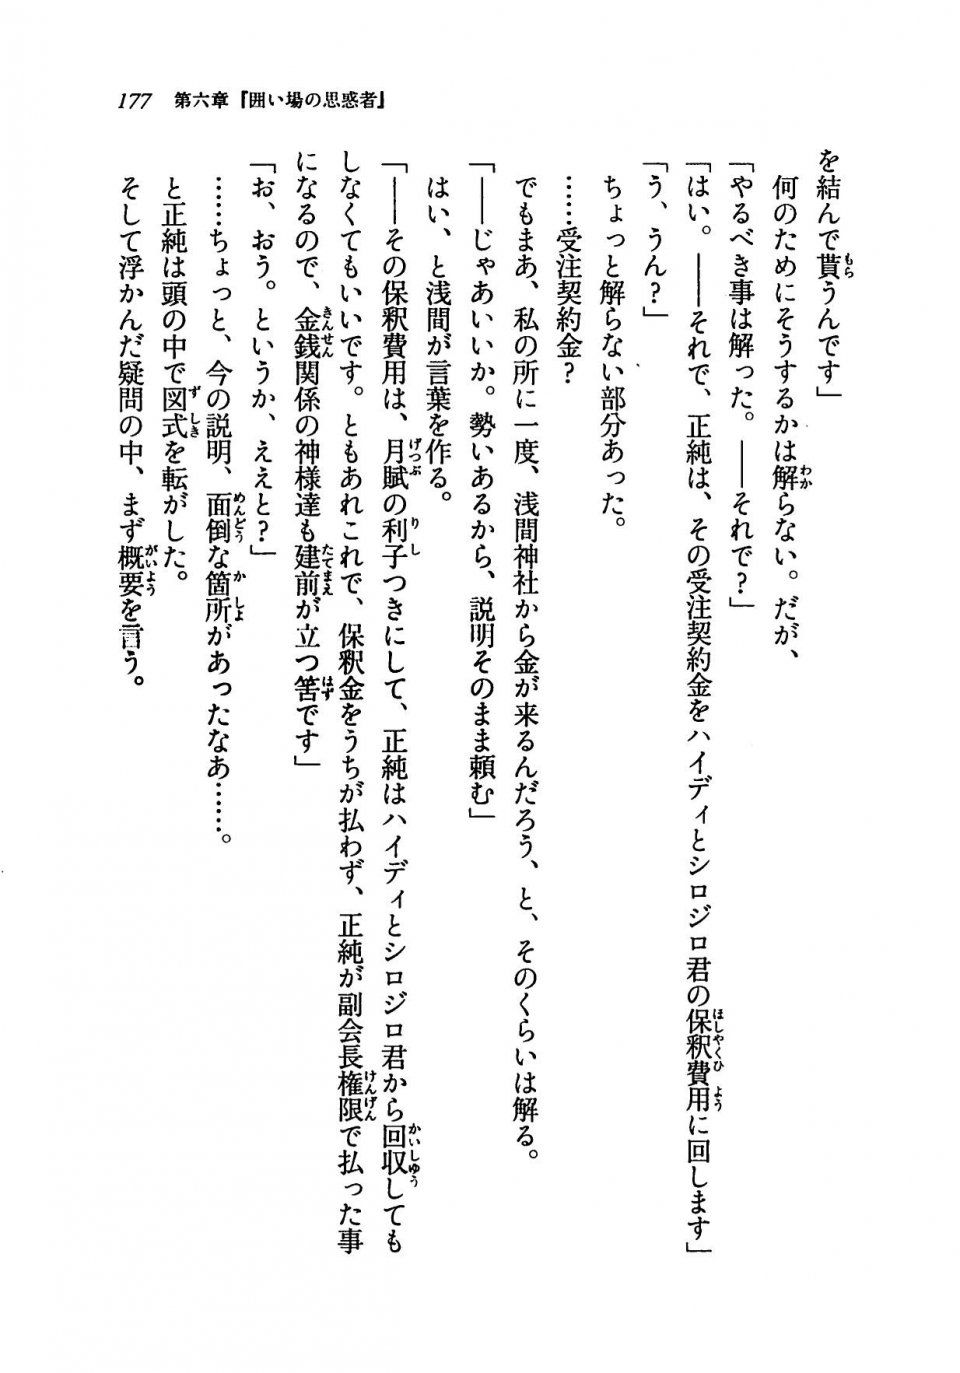 Kyoukai Senjou no Horizon LN Vol 19(8A) - Photo #177